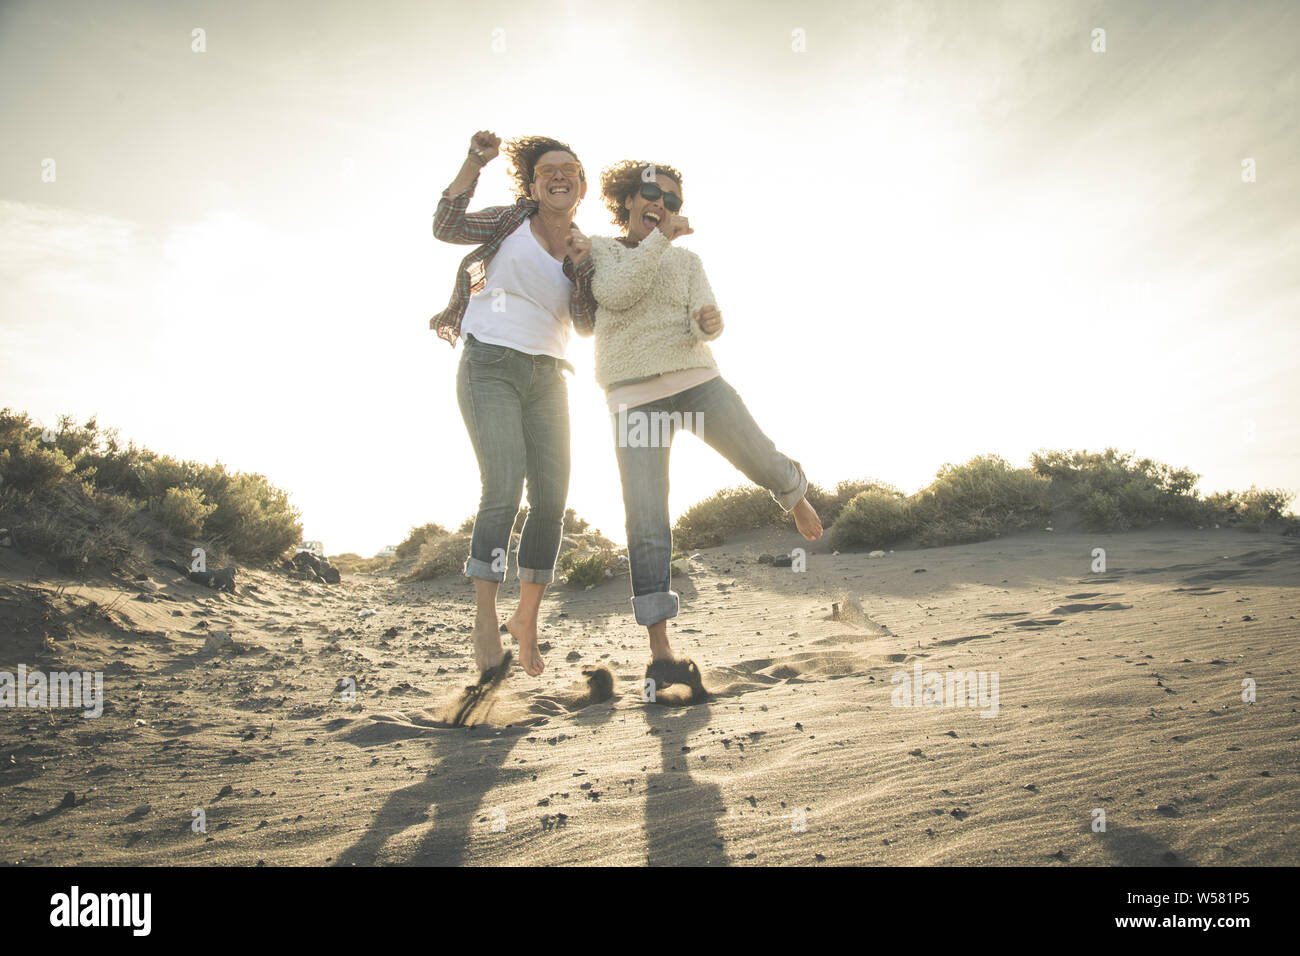 Freundschaft, Sommerurlaub, Freiheit, Glück und Personen Konzept - zwei glückliche Frauen mittleren Alters Freunde tanzen und springen am Strand. In voller Länge sho Stockfoto